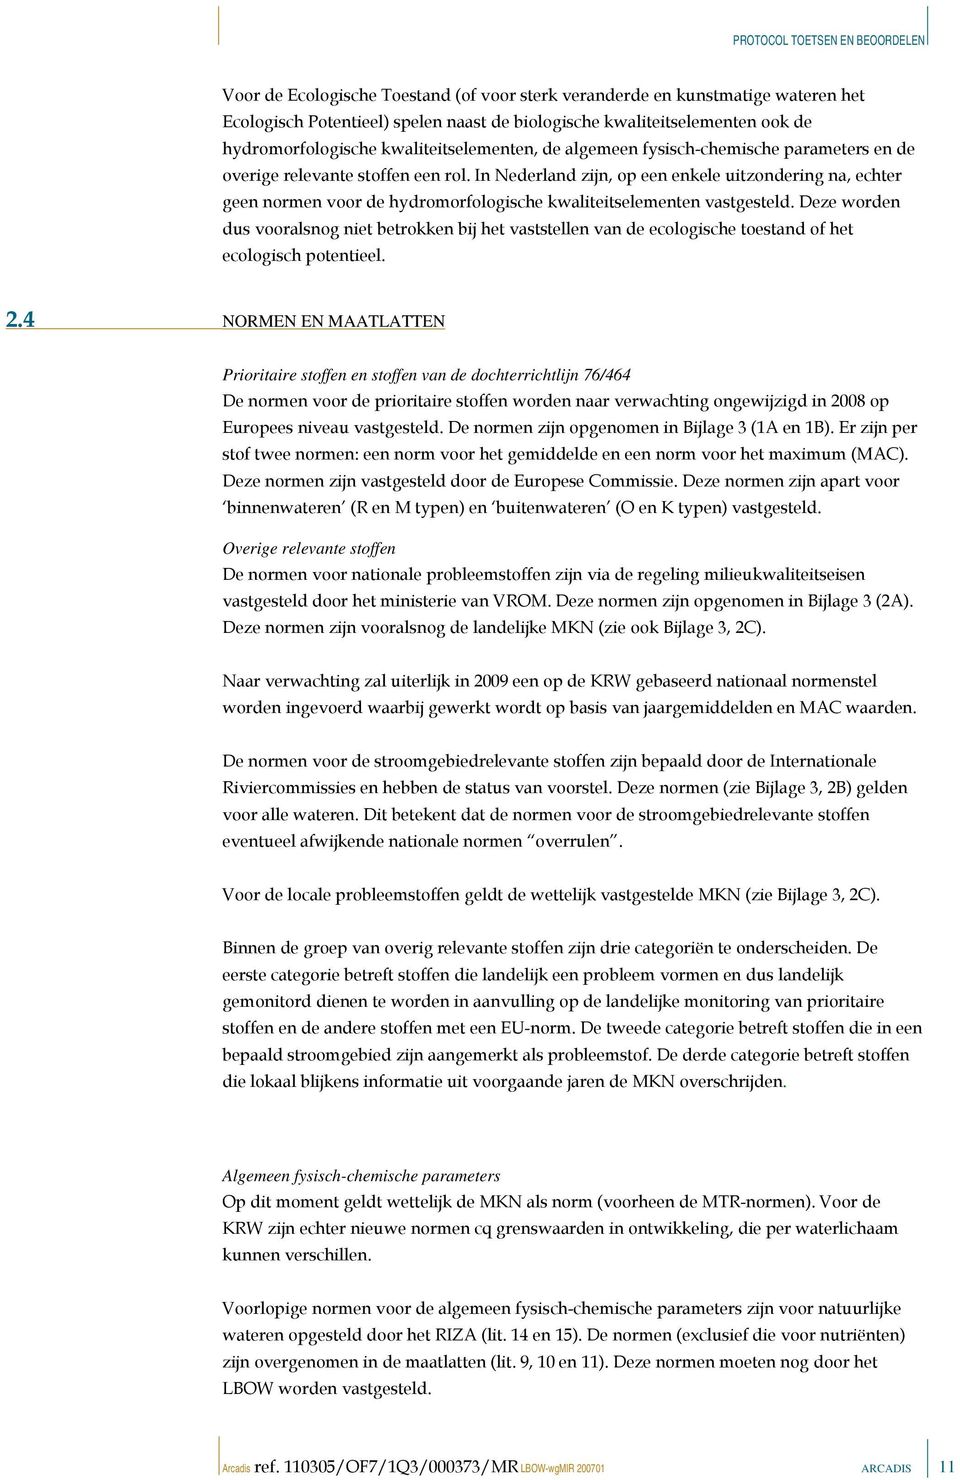 In Nederland zijn, op een enkele uitzondering na, echter geen normen voor de hydromorfologische kwaliteitselementen vastgesteld.